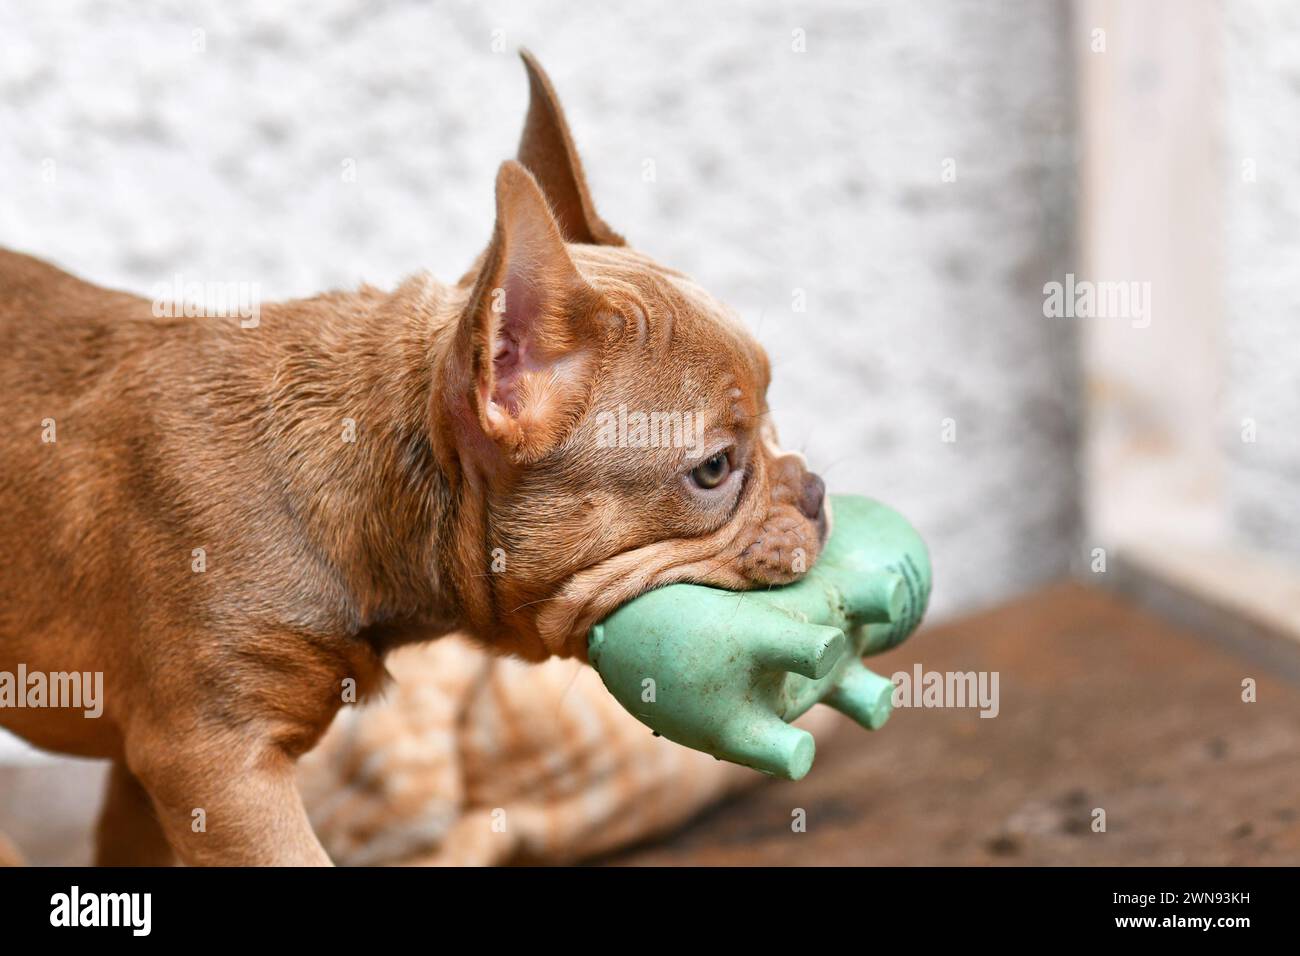 Isabella sable chien bouledogue français chiot portant un jouet grinçant dans la bouche Banque D'Images